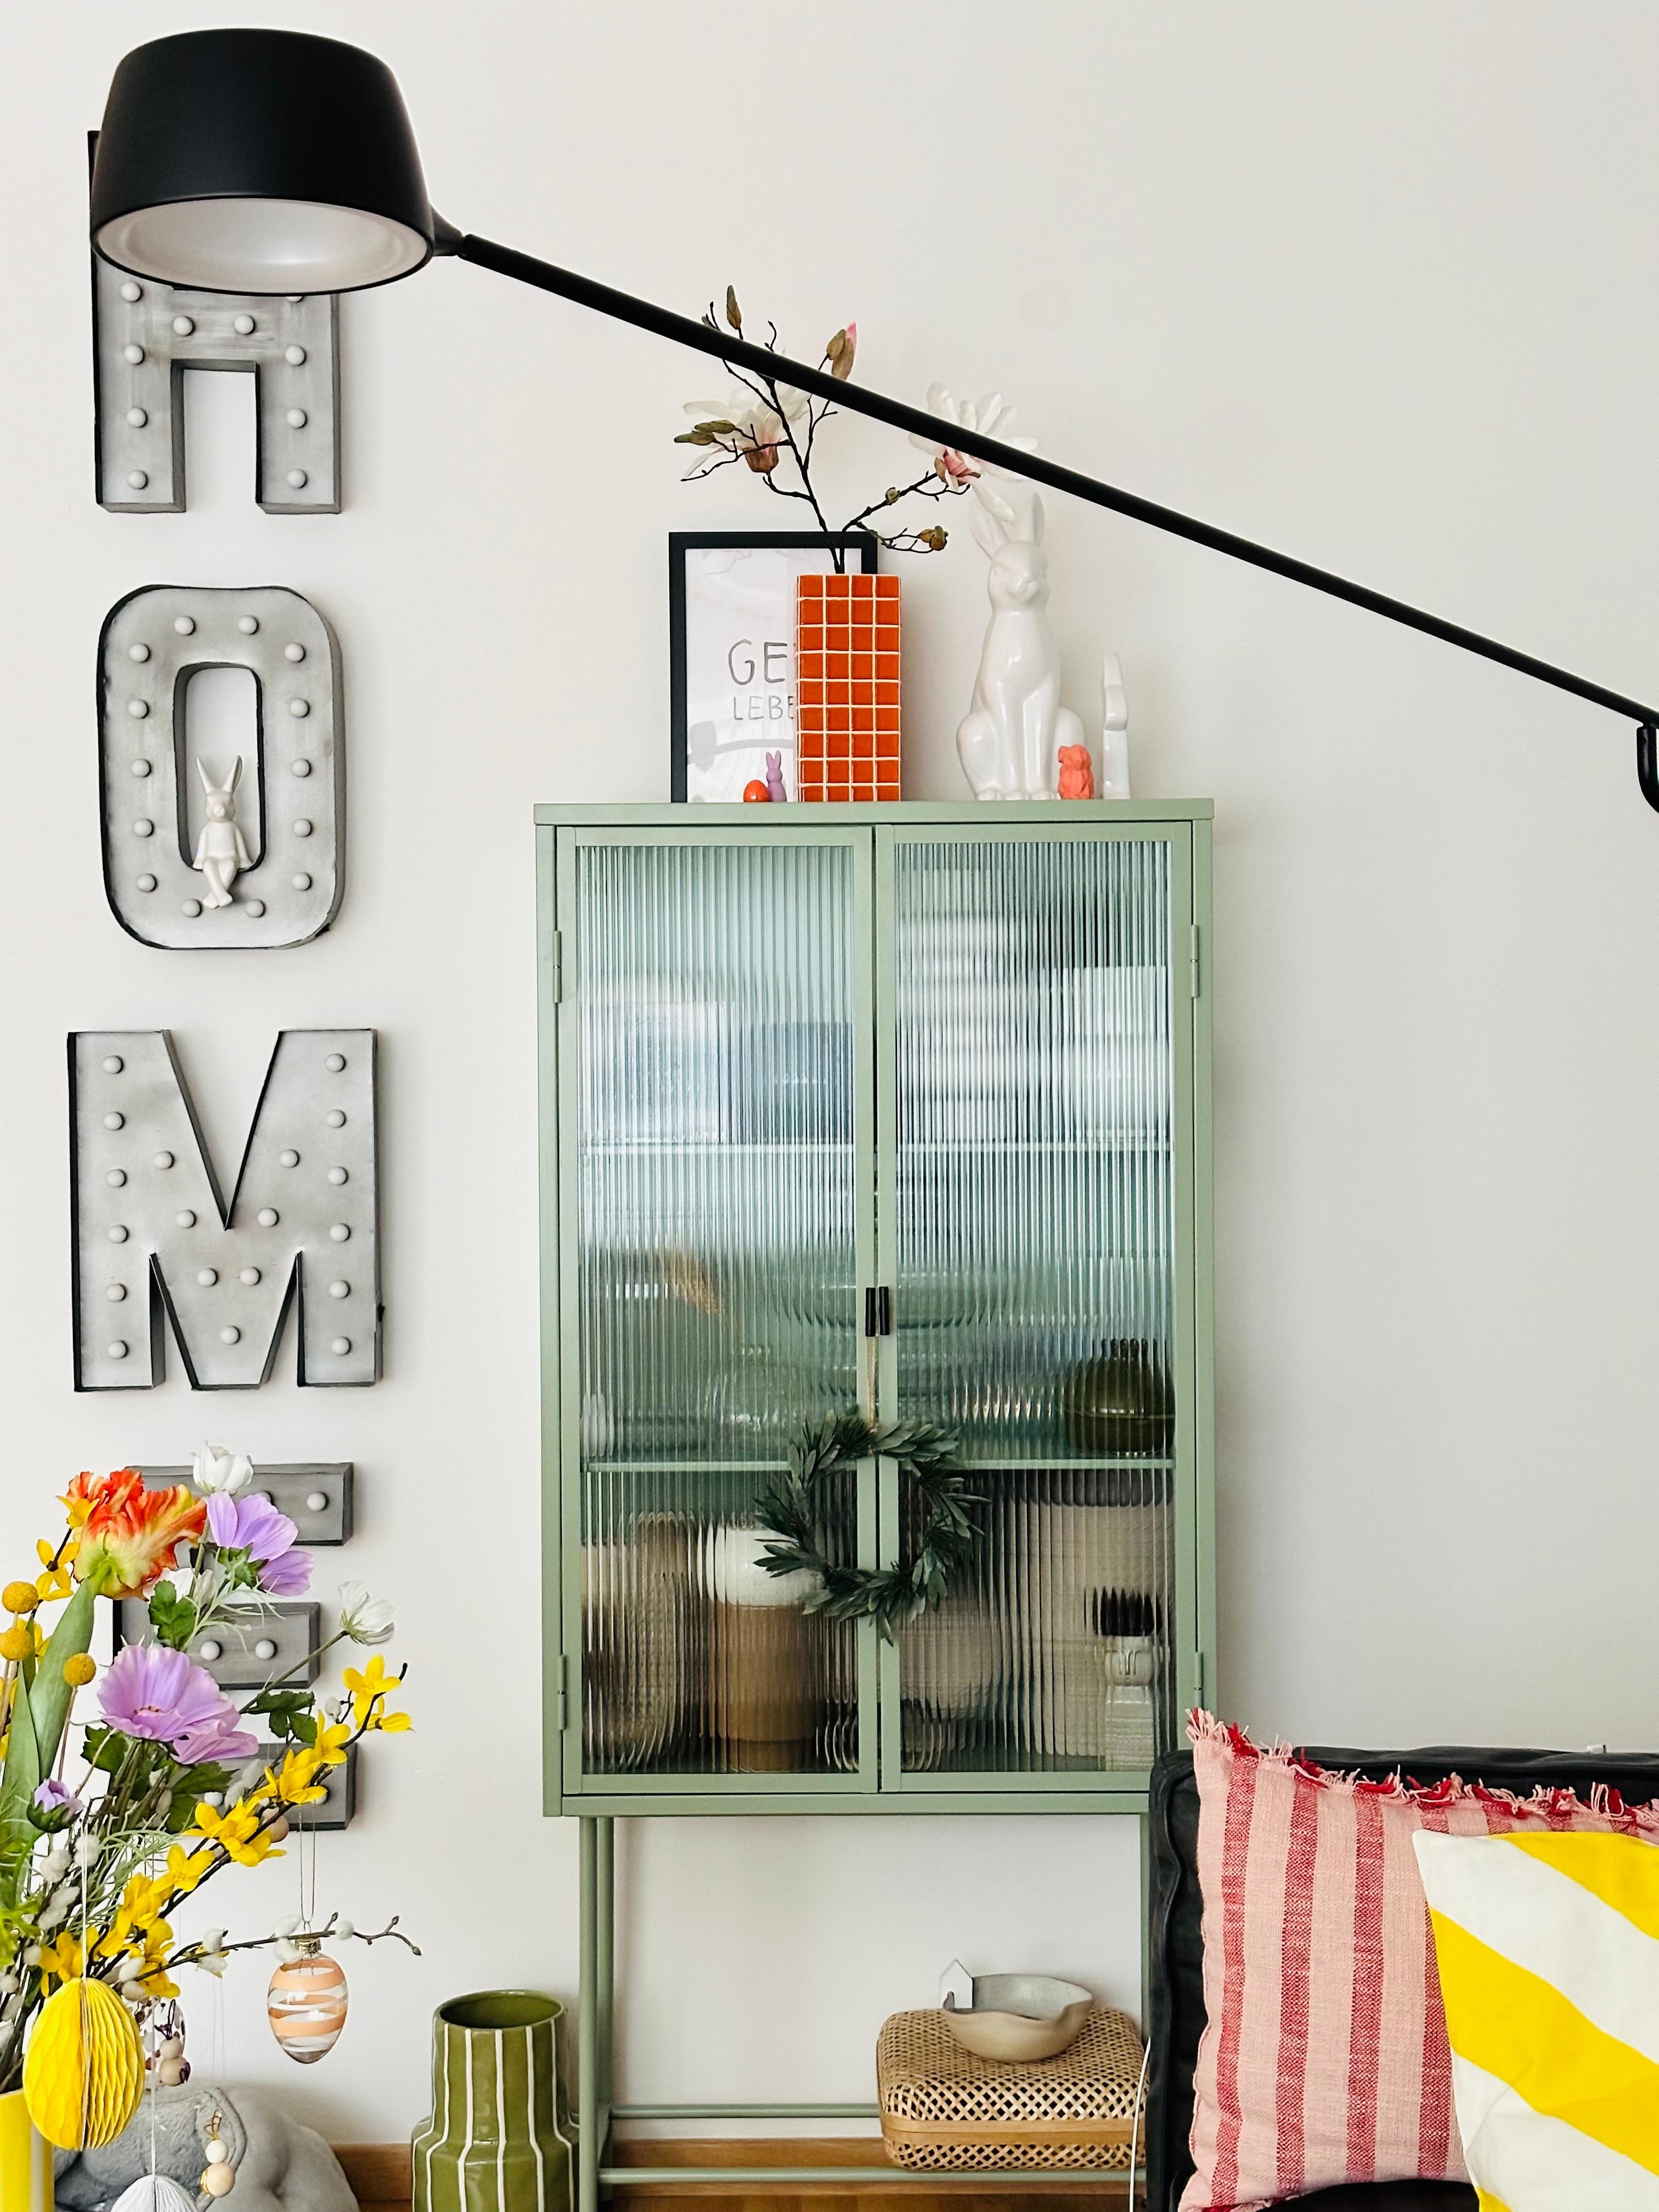 #wohnzimmer #vitrine #osterdeko #vase #farbenfroh #magnolie #licht #lampe #wanddeko #leuchtreklame #kissen #blumendeko #blumenliebe #bunt #poster #streifen #osterstrauch